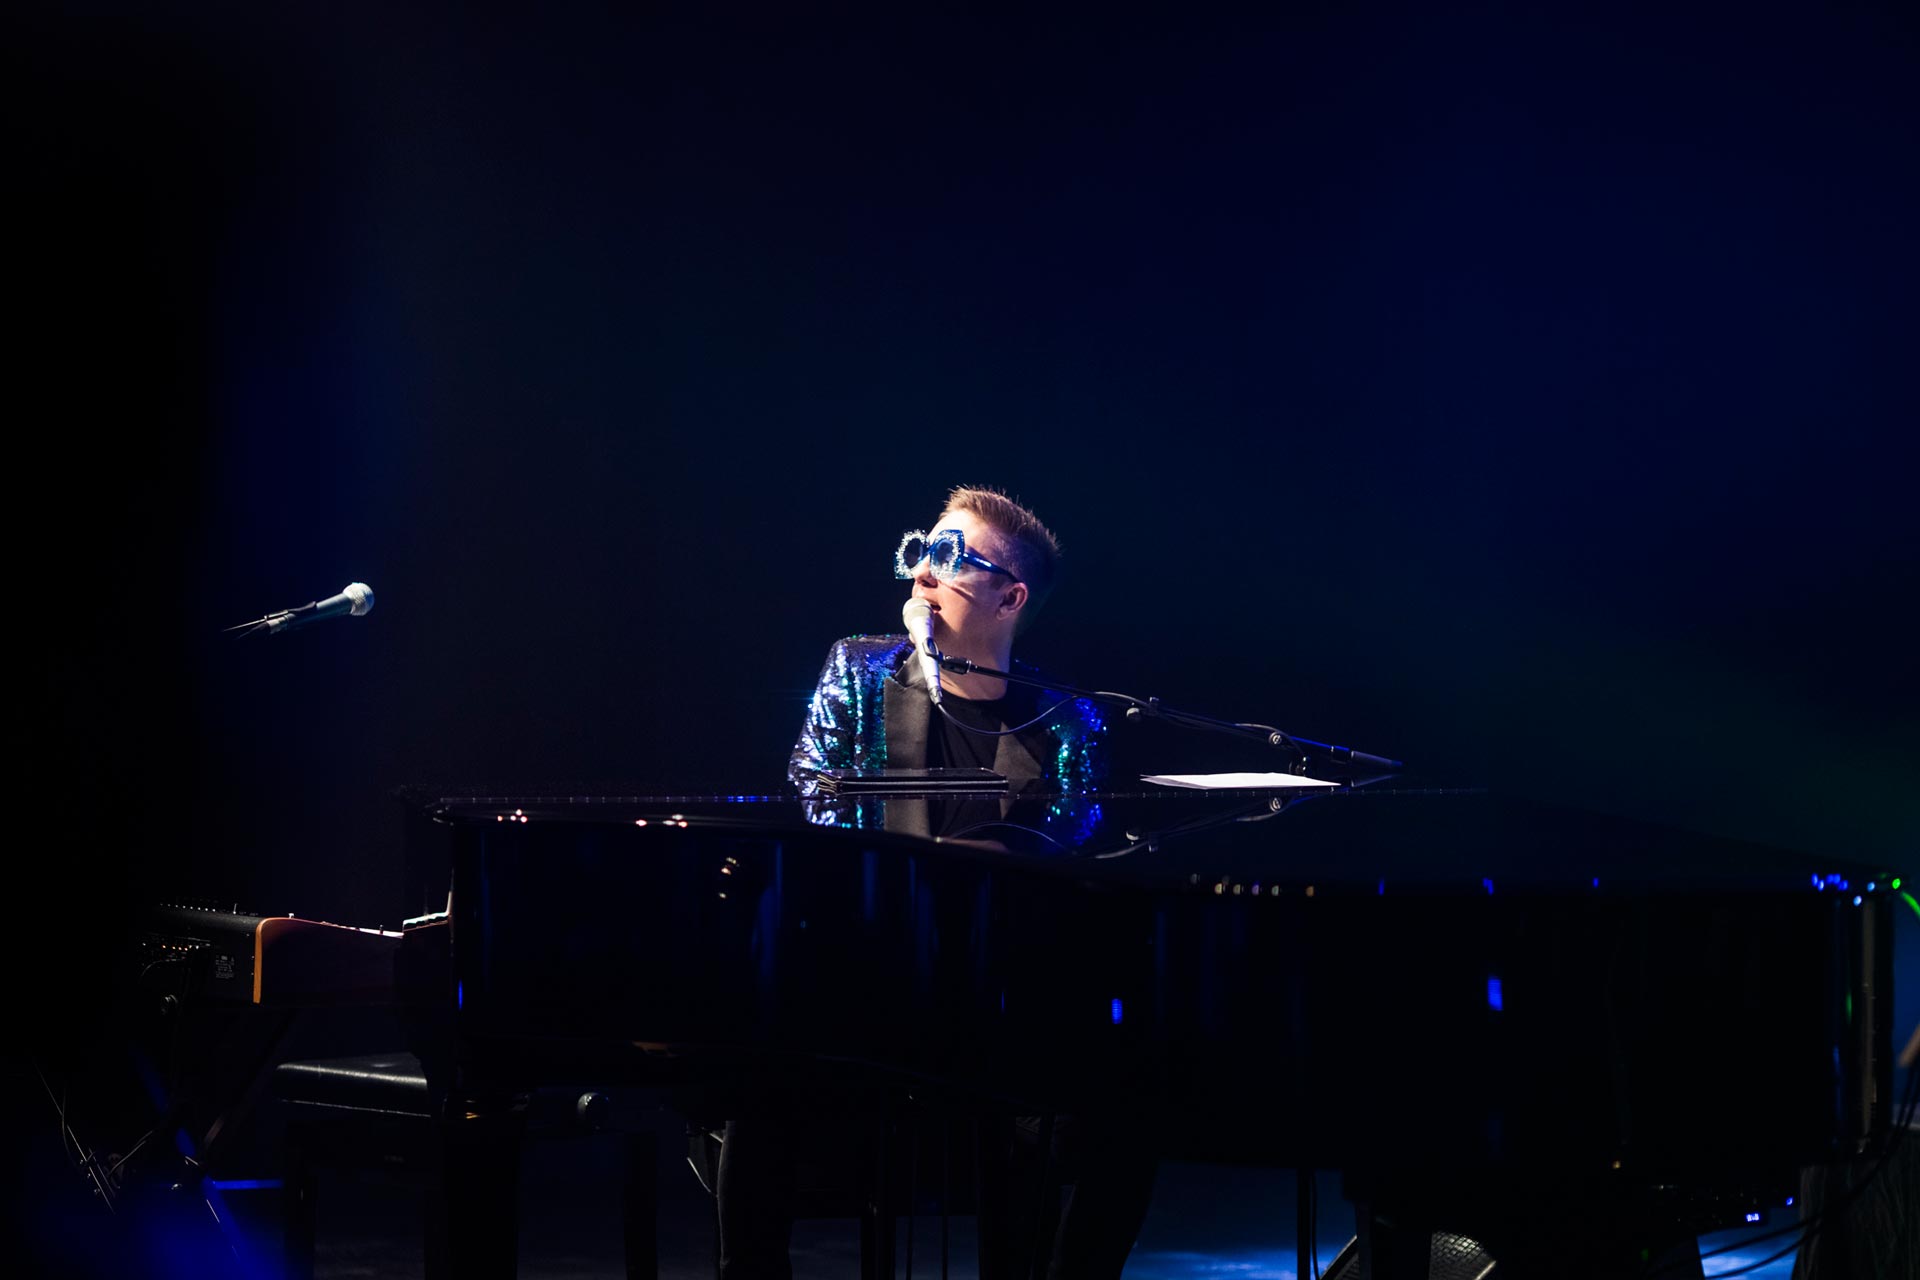 Elton John Tribute Show